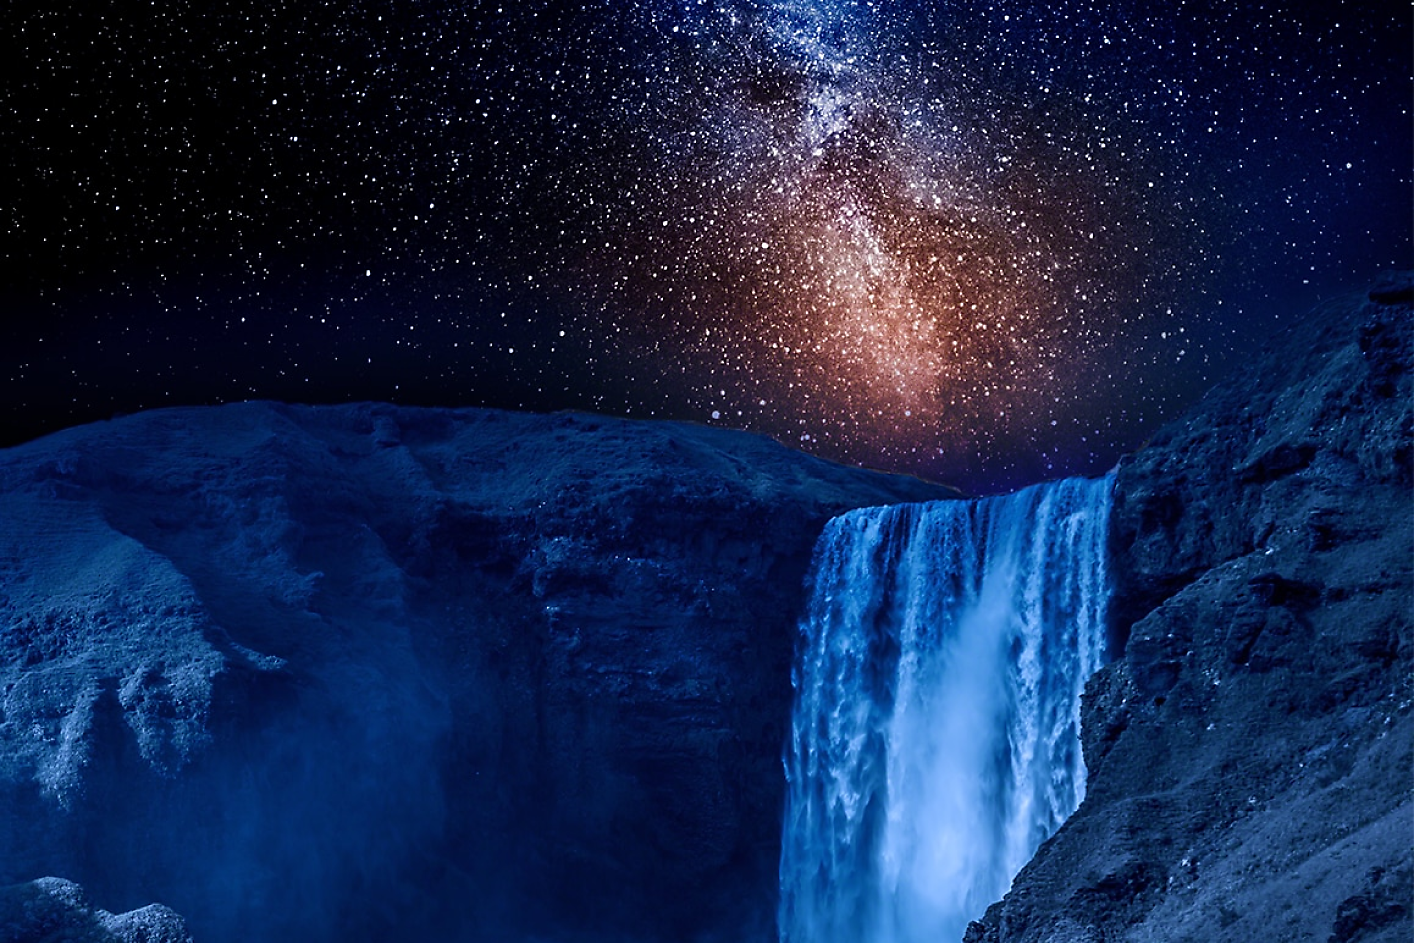 Tmavomodrý vodopád pod hviezdnatou nočnou oblohou v pozadí